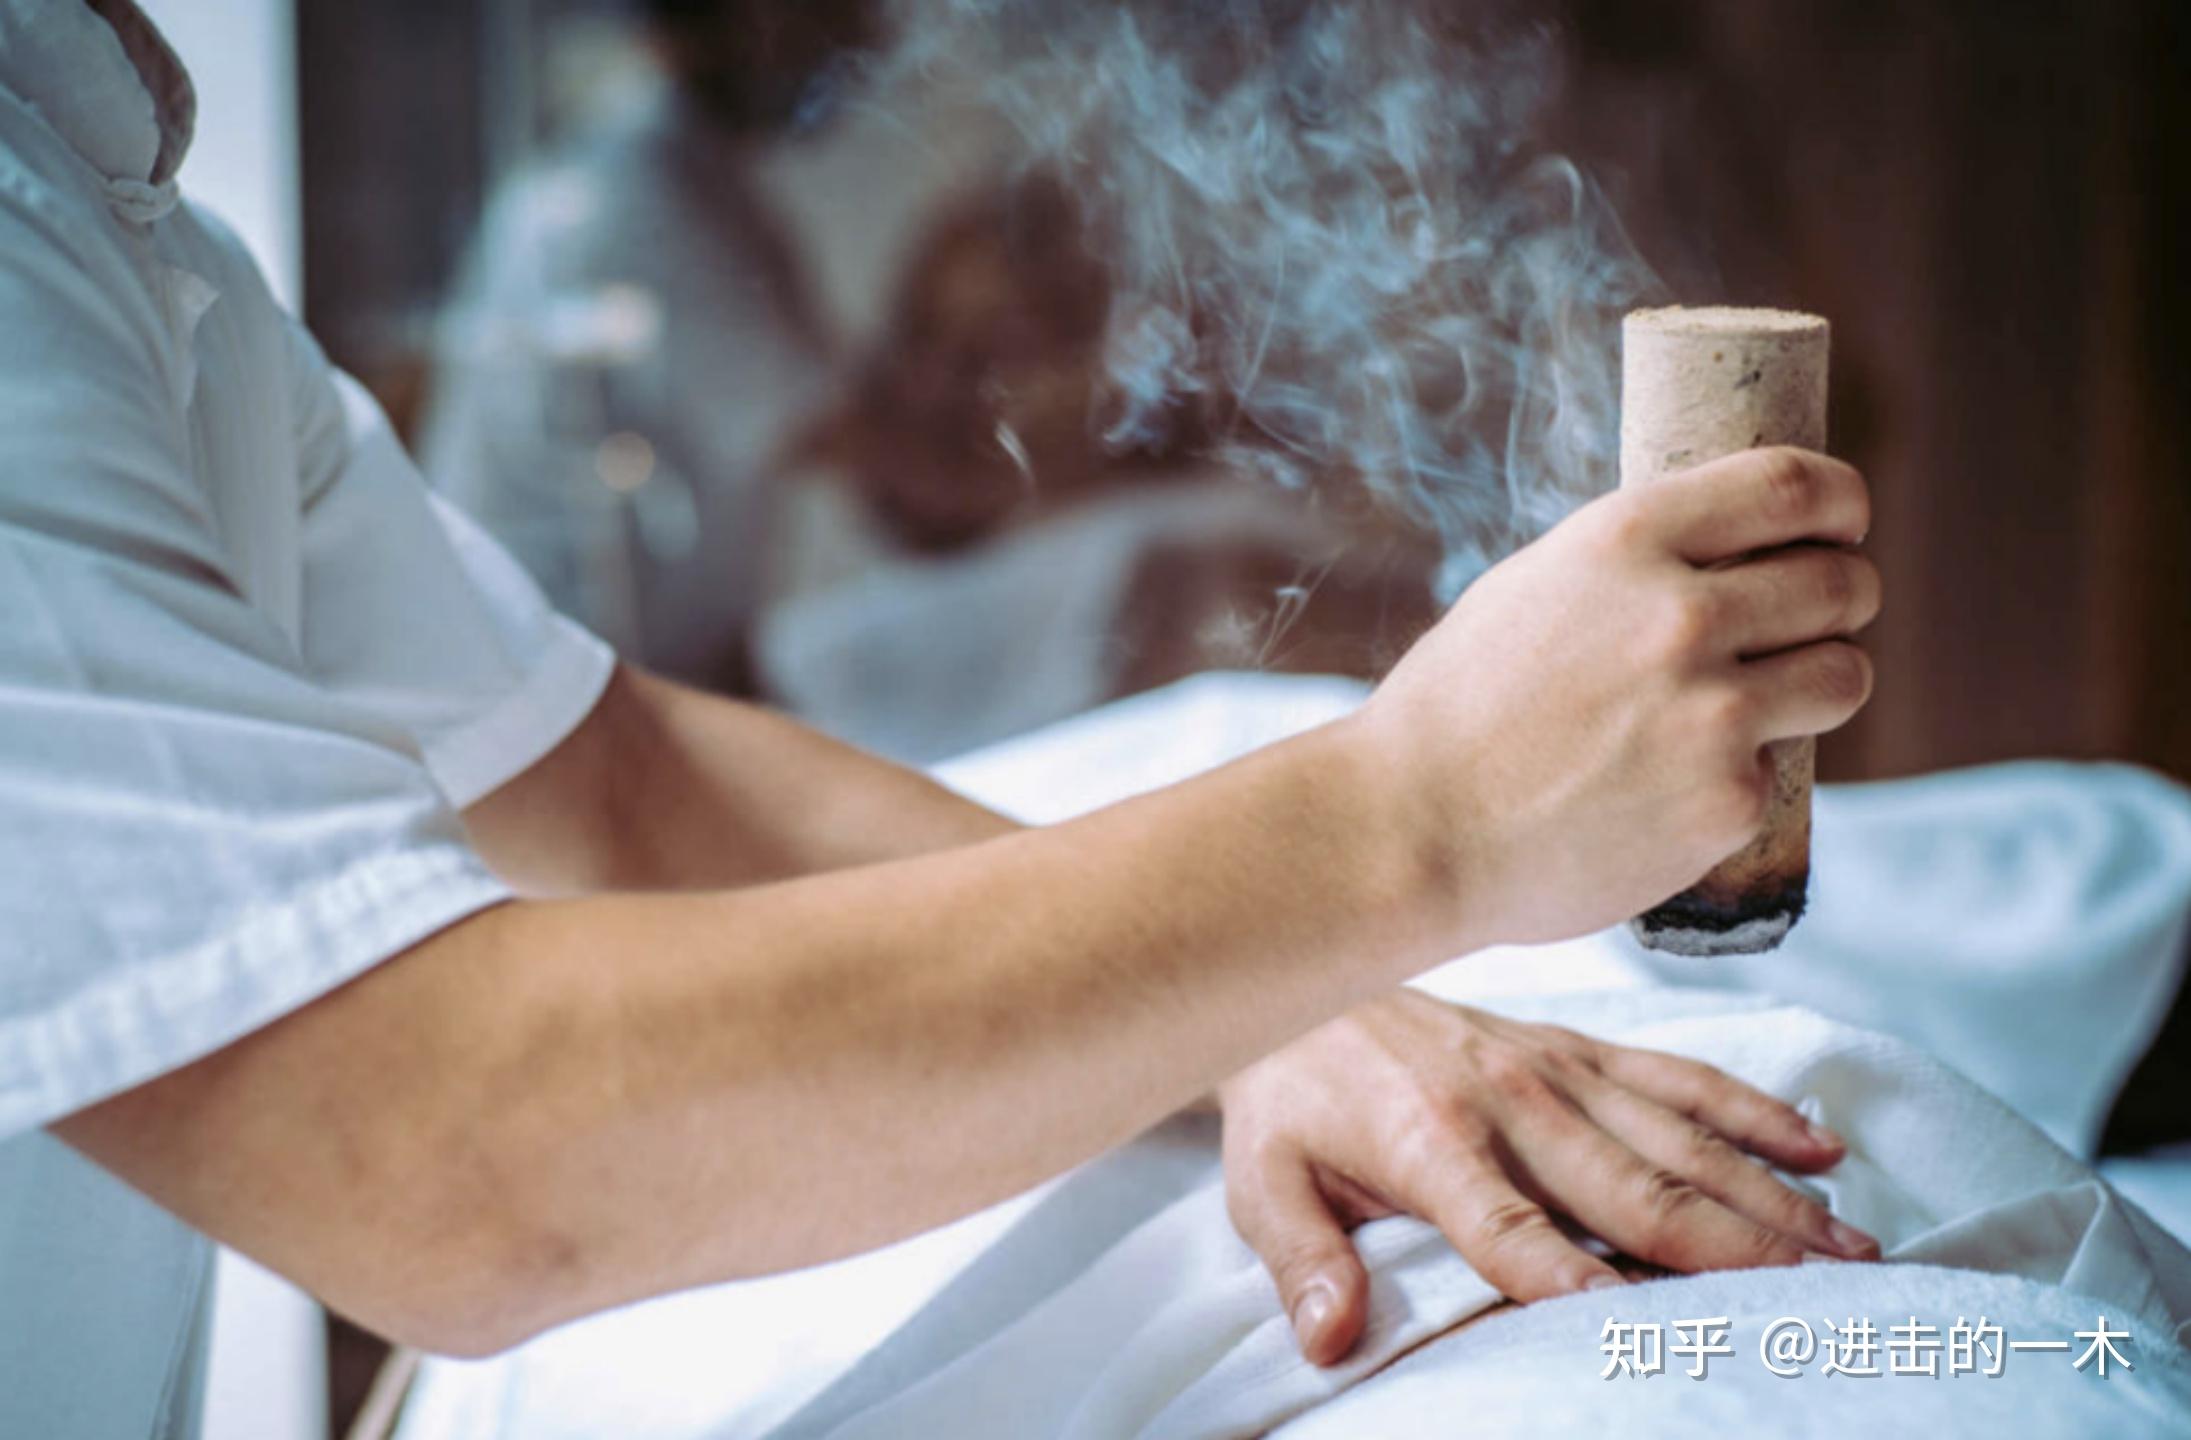 艾灸是中医方法中种最古老最传统的养生方法之一,它具有「温经散寒」